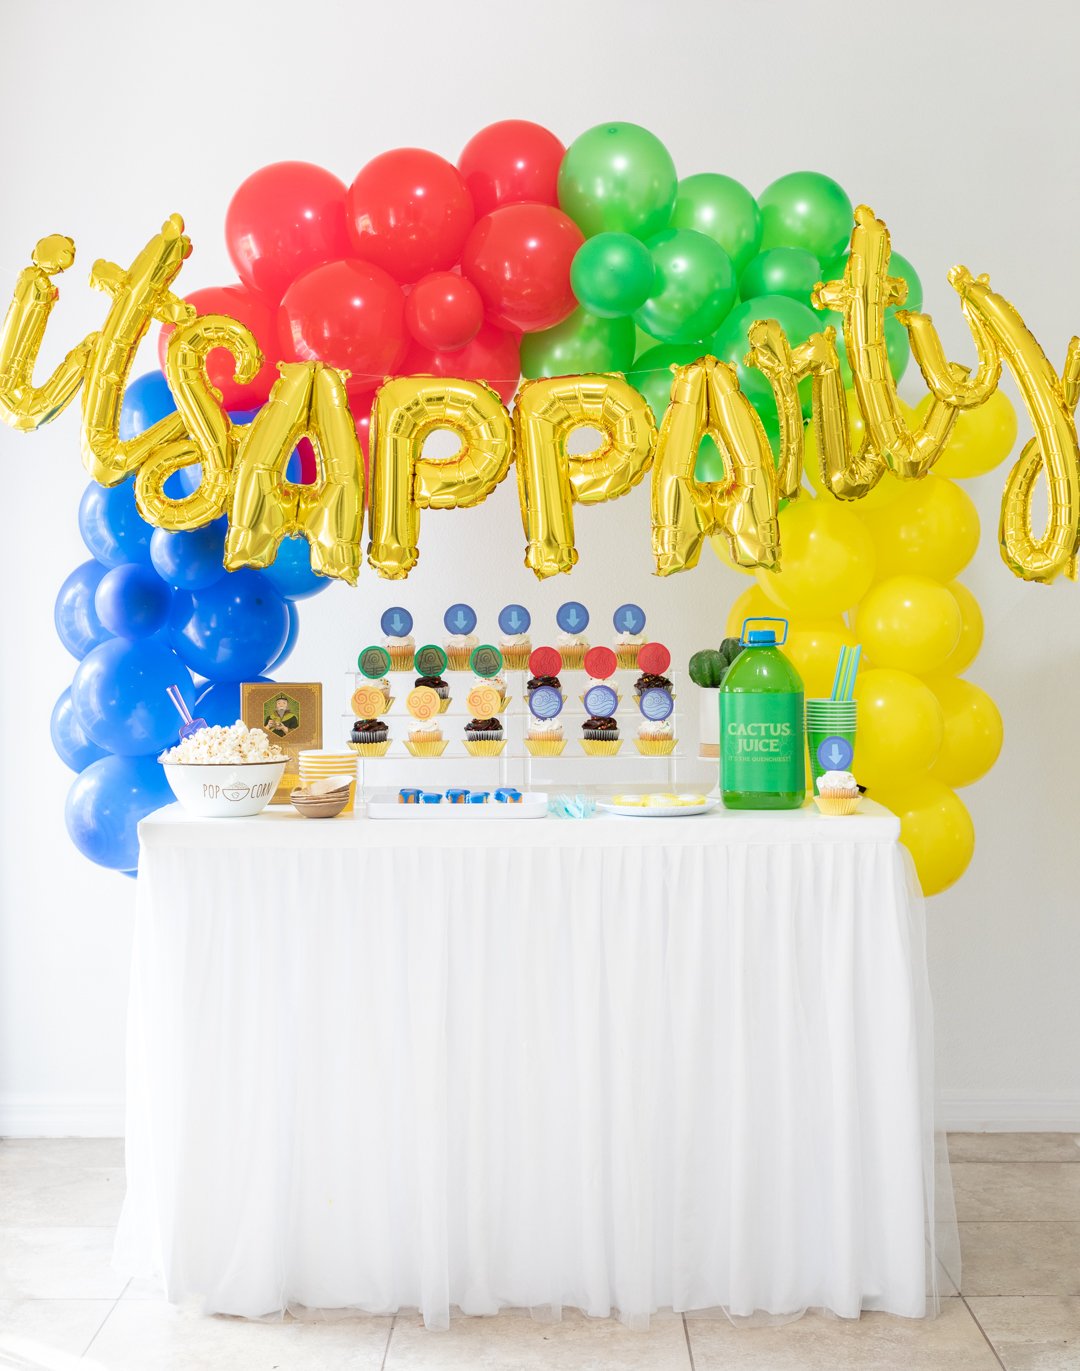 é um APPArty Avatar: The Last Airbender Party Table com balões que dizem "É APPArty"arcos de balões azuis, vermelhos, verdes e amarelos e comida de festa temática.